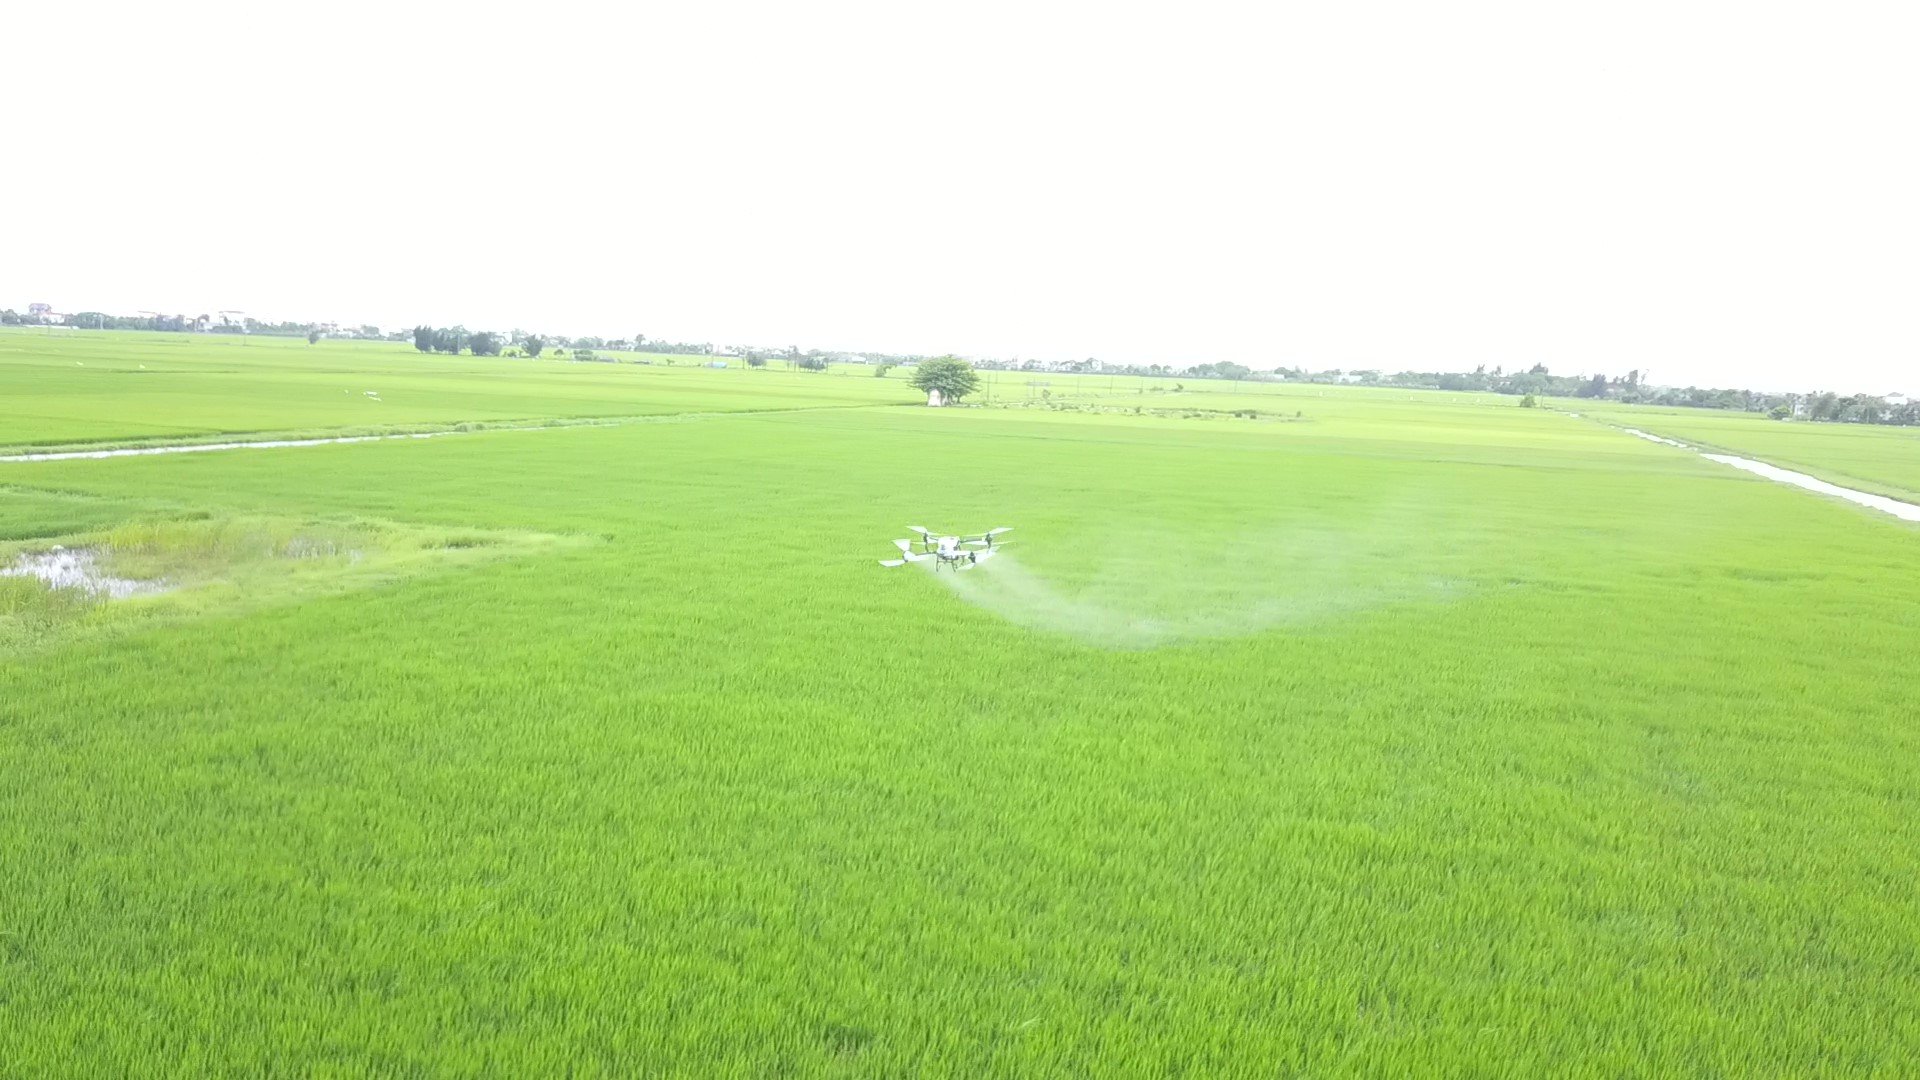 Anh nông dân trồng lúa trên cánh đồng thẳng cánh cò bay ở Thái Bình kiểu gì mà nổi tiếng khắp vùng?- Ảnh 5.